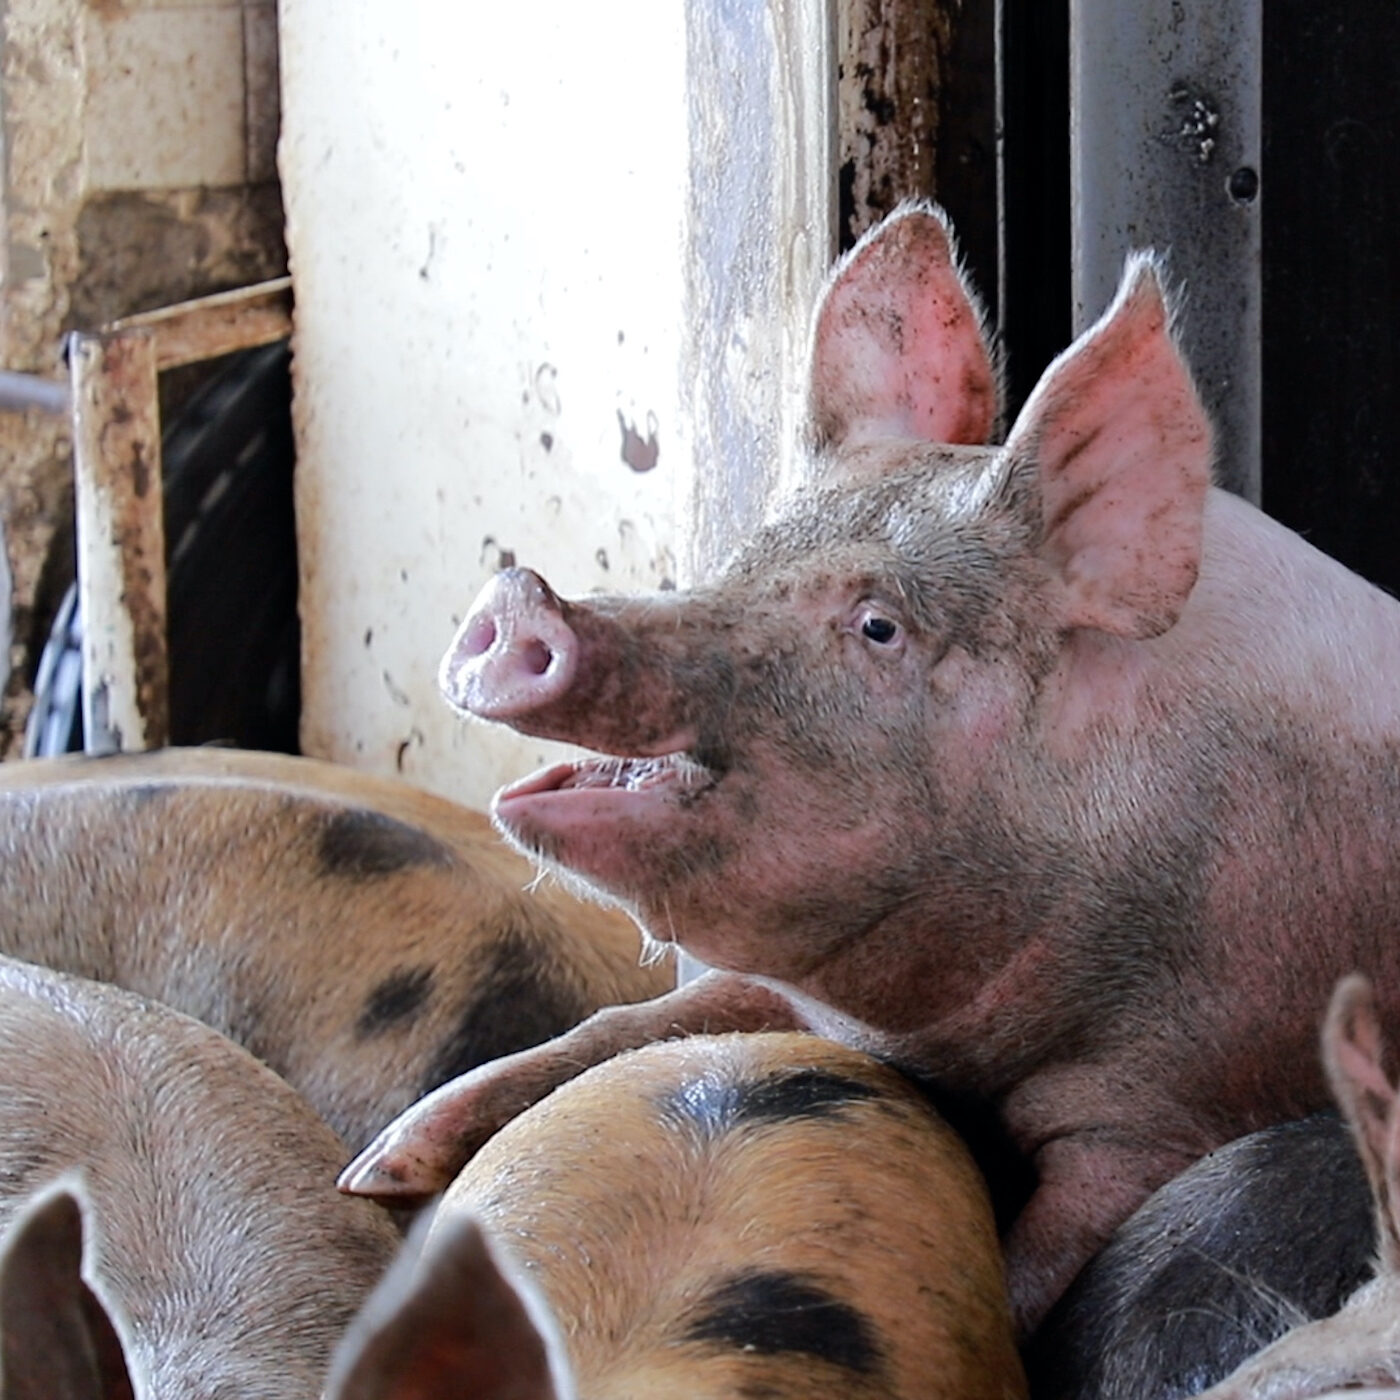 Crueldad e ilegalidad en rastro de cerdos